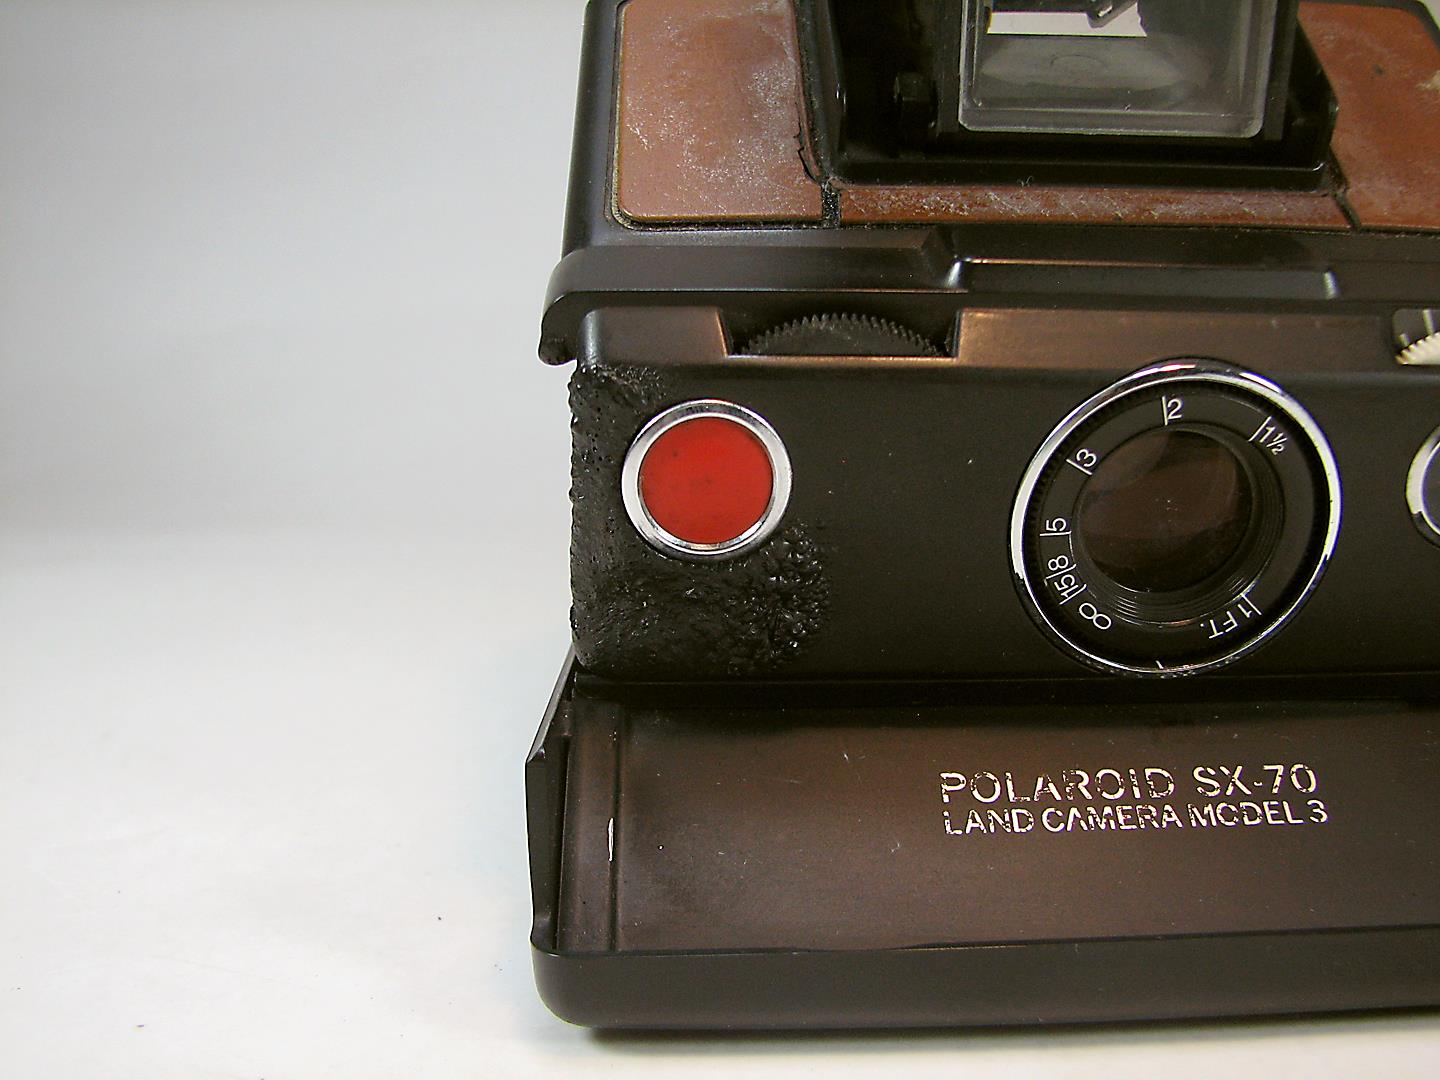 دوربین پلاروید Polaroid SX-70 Model 3